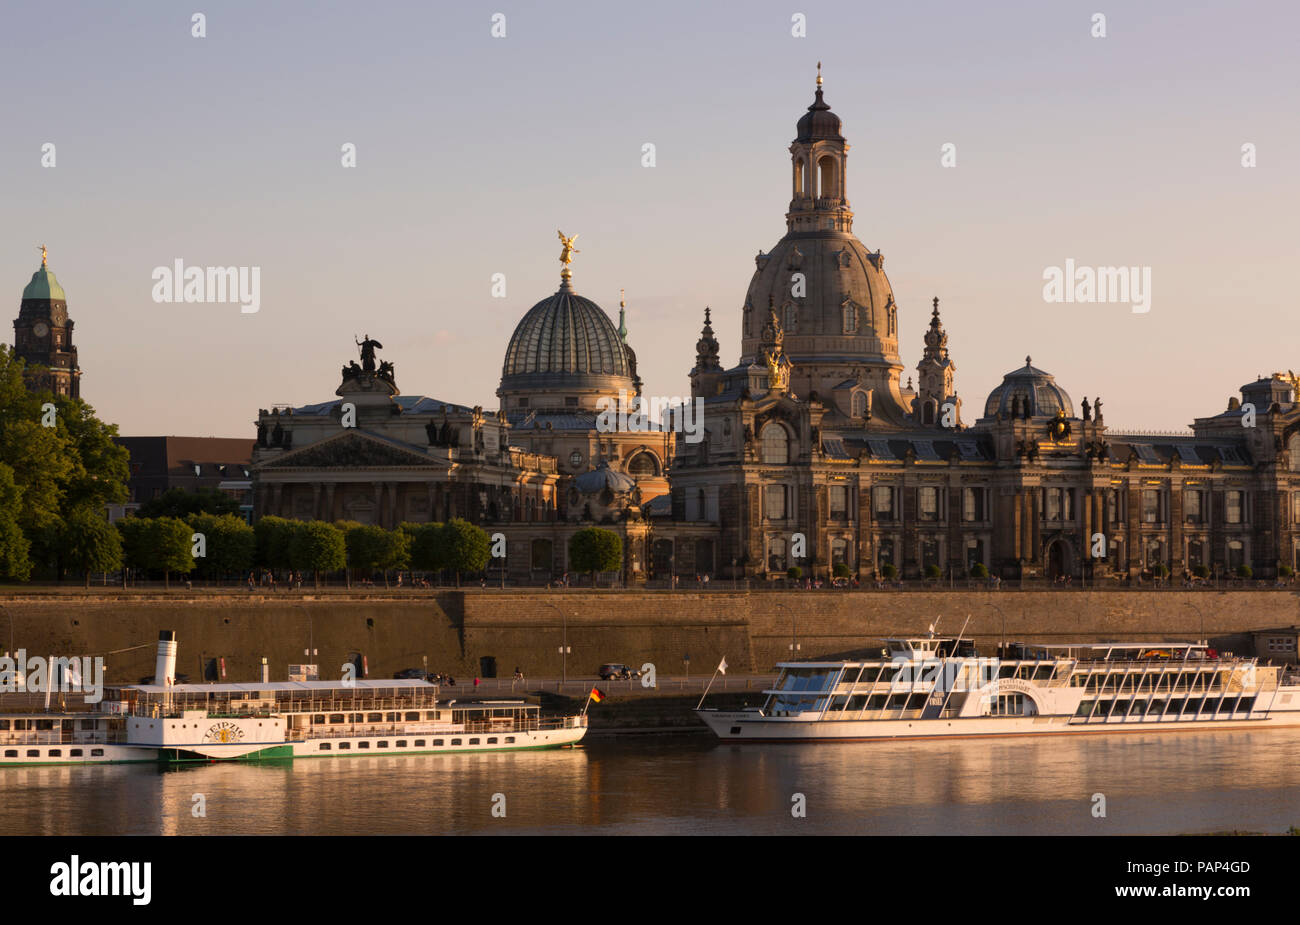 Alemania, Dresden, Bruehl's Terrace con la Academia de Bellas Artes y la iglesia de Nuestra Señora al atardecer Foto de stock